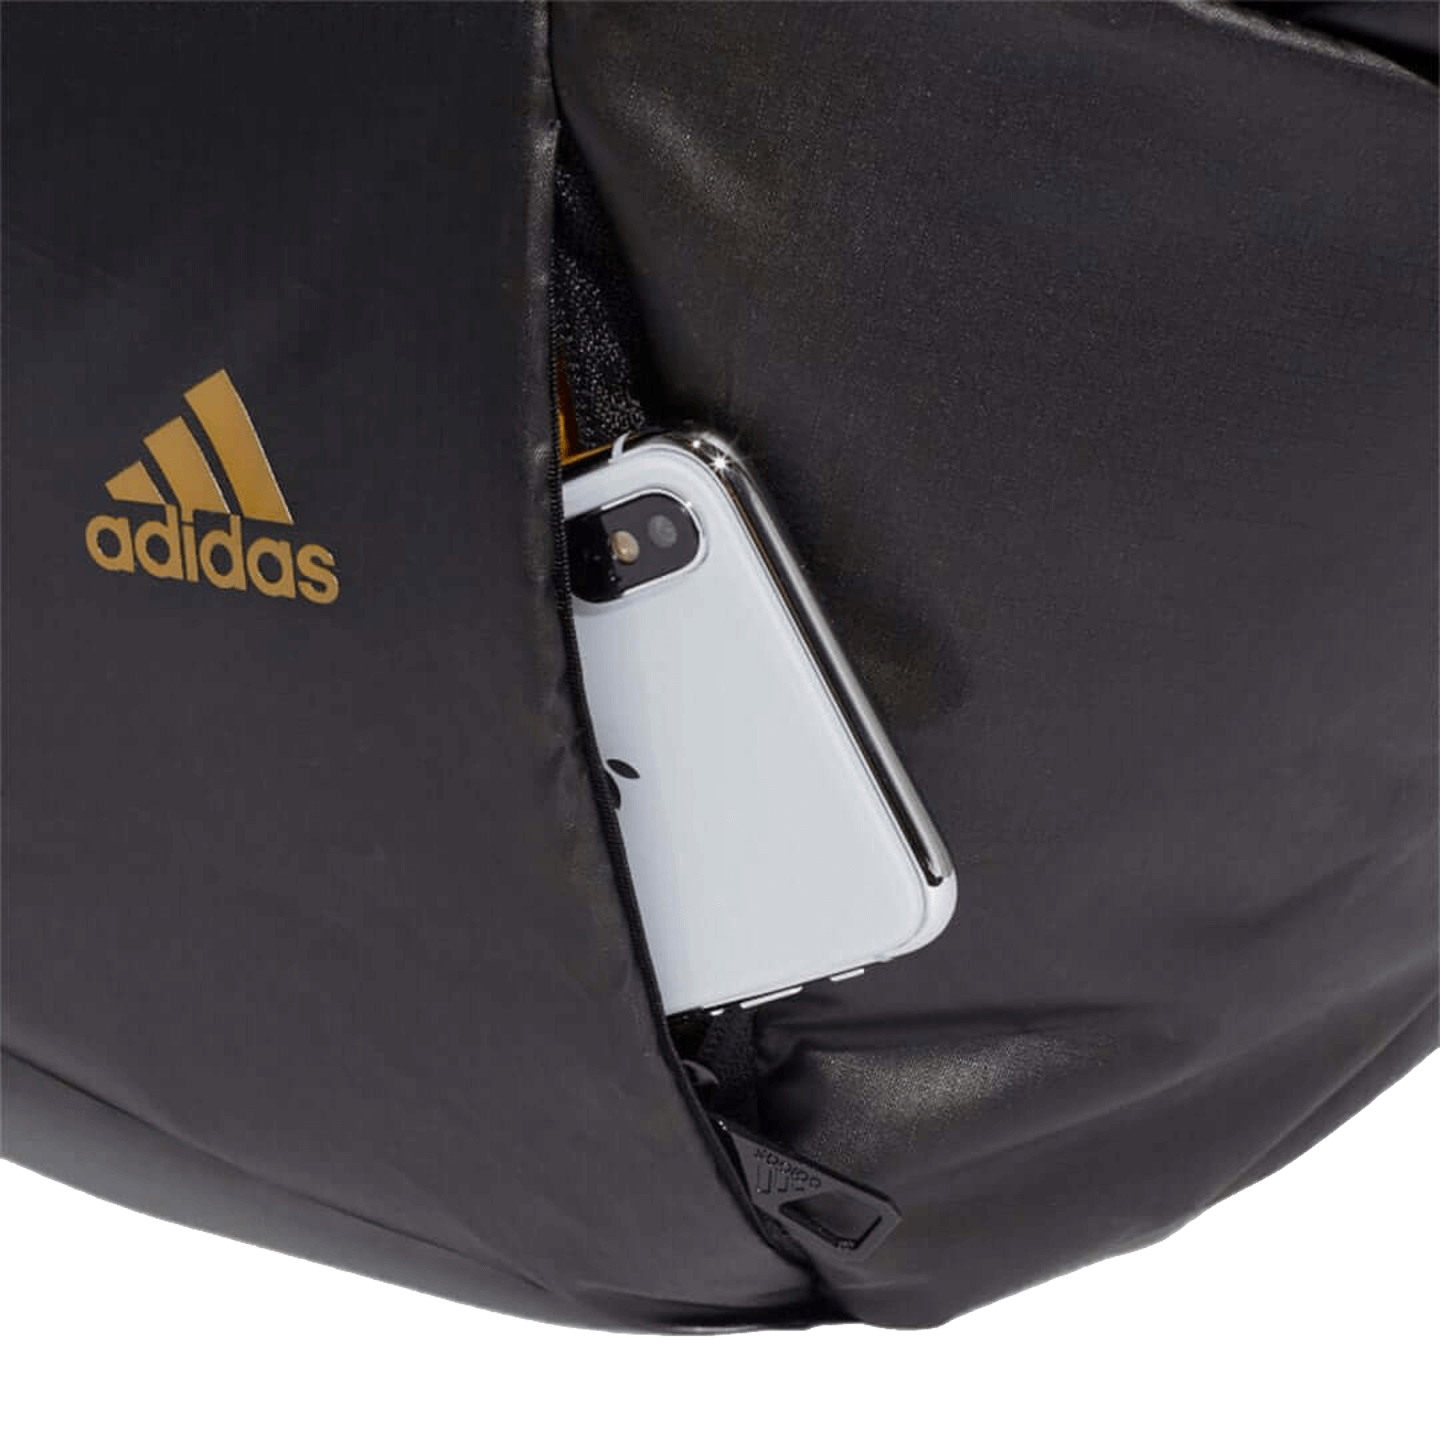 Adidas Womens Duffel Bag